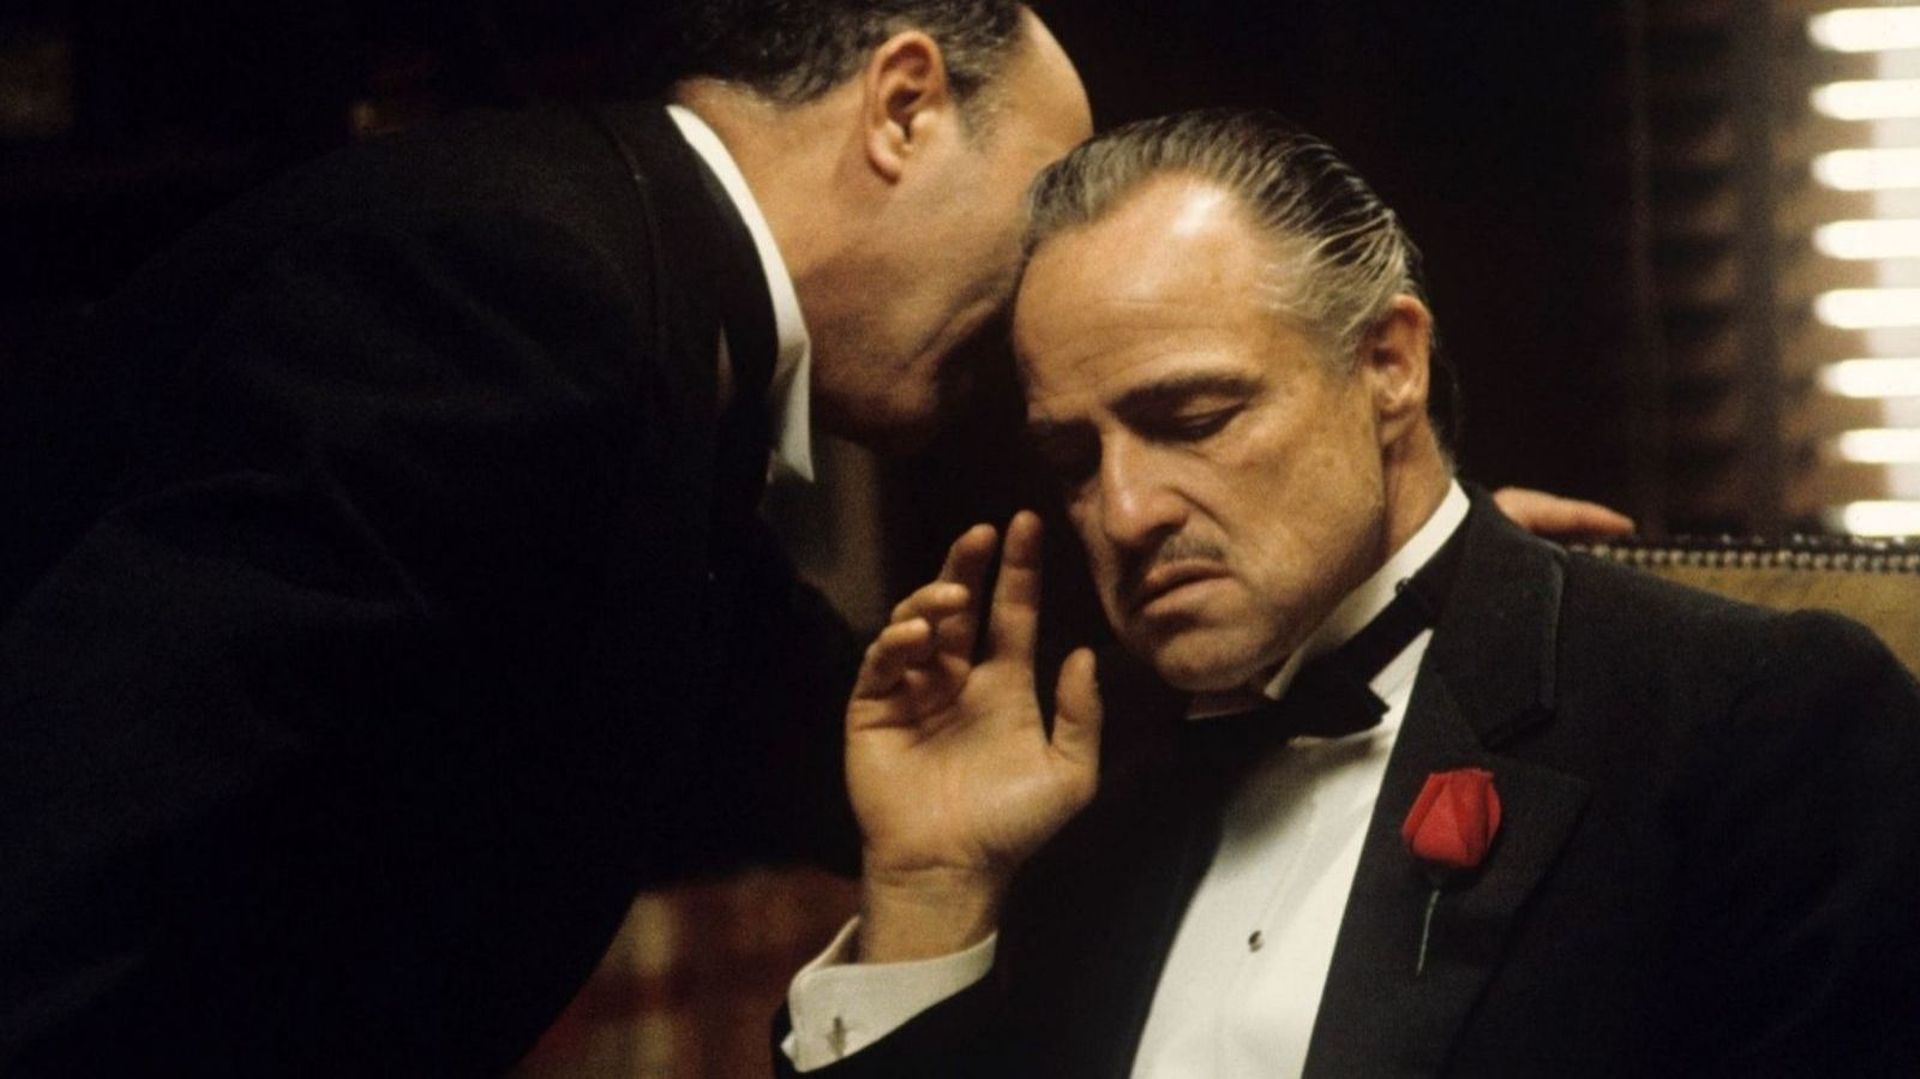 Le Parrain c’est Don Corleone et il est incarné par Marlon Brando